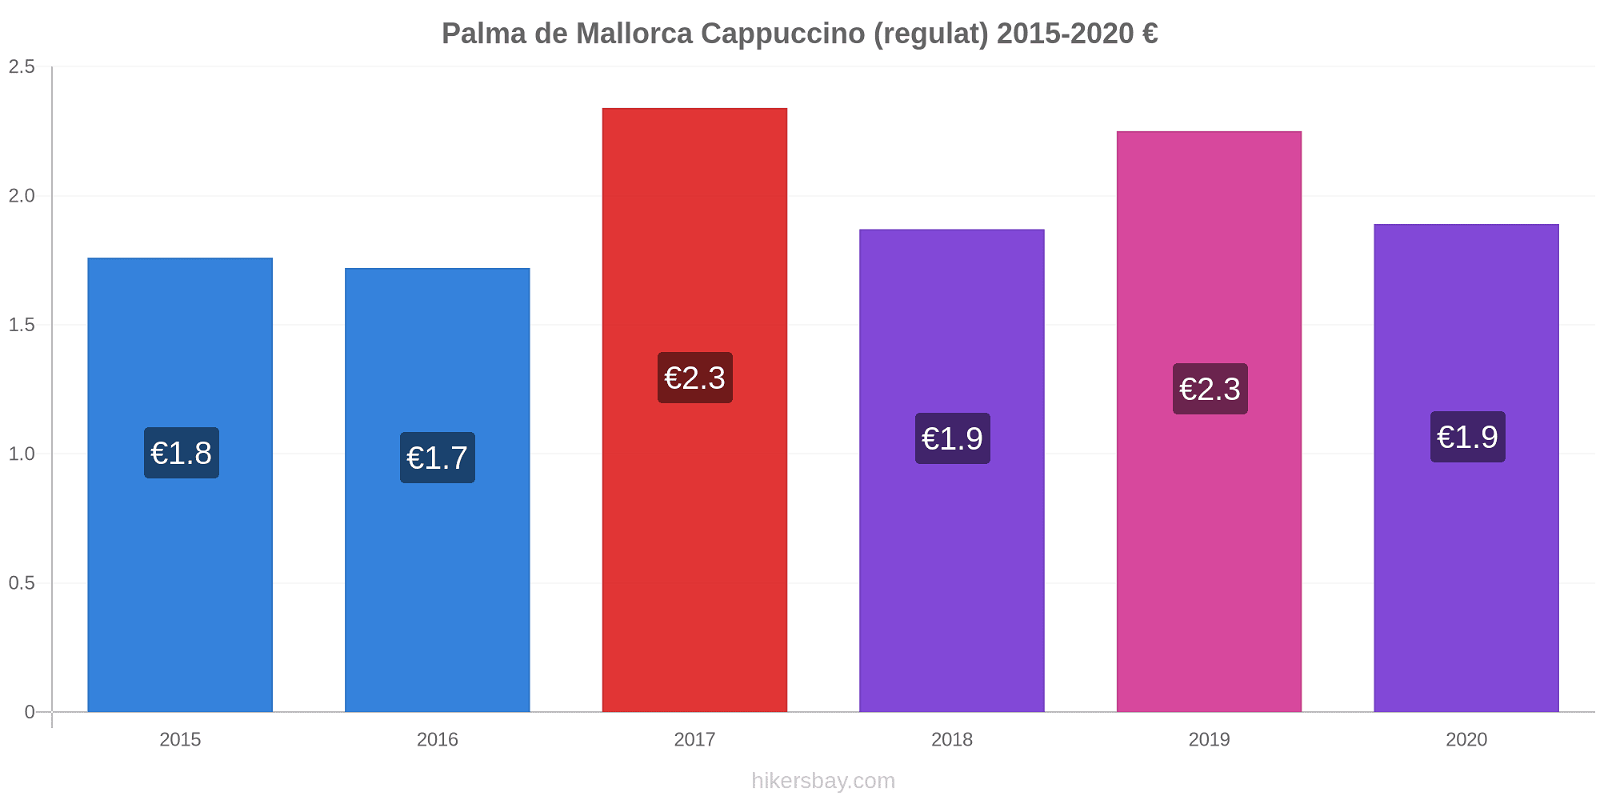 Palma de Mallorca modificări de preț Cappuccino (regulat) hikersbay.com